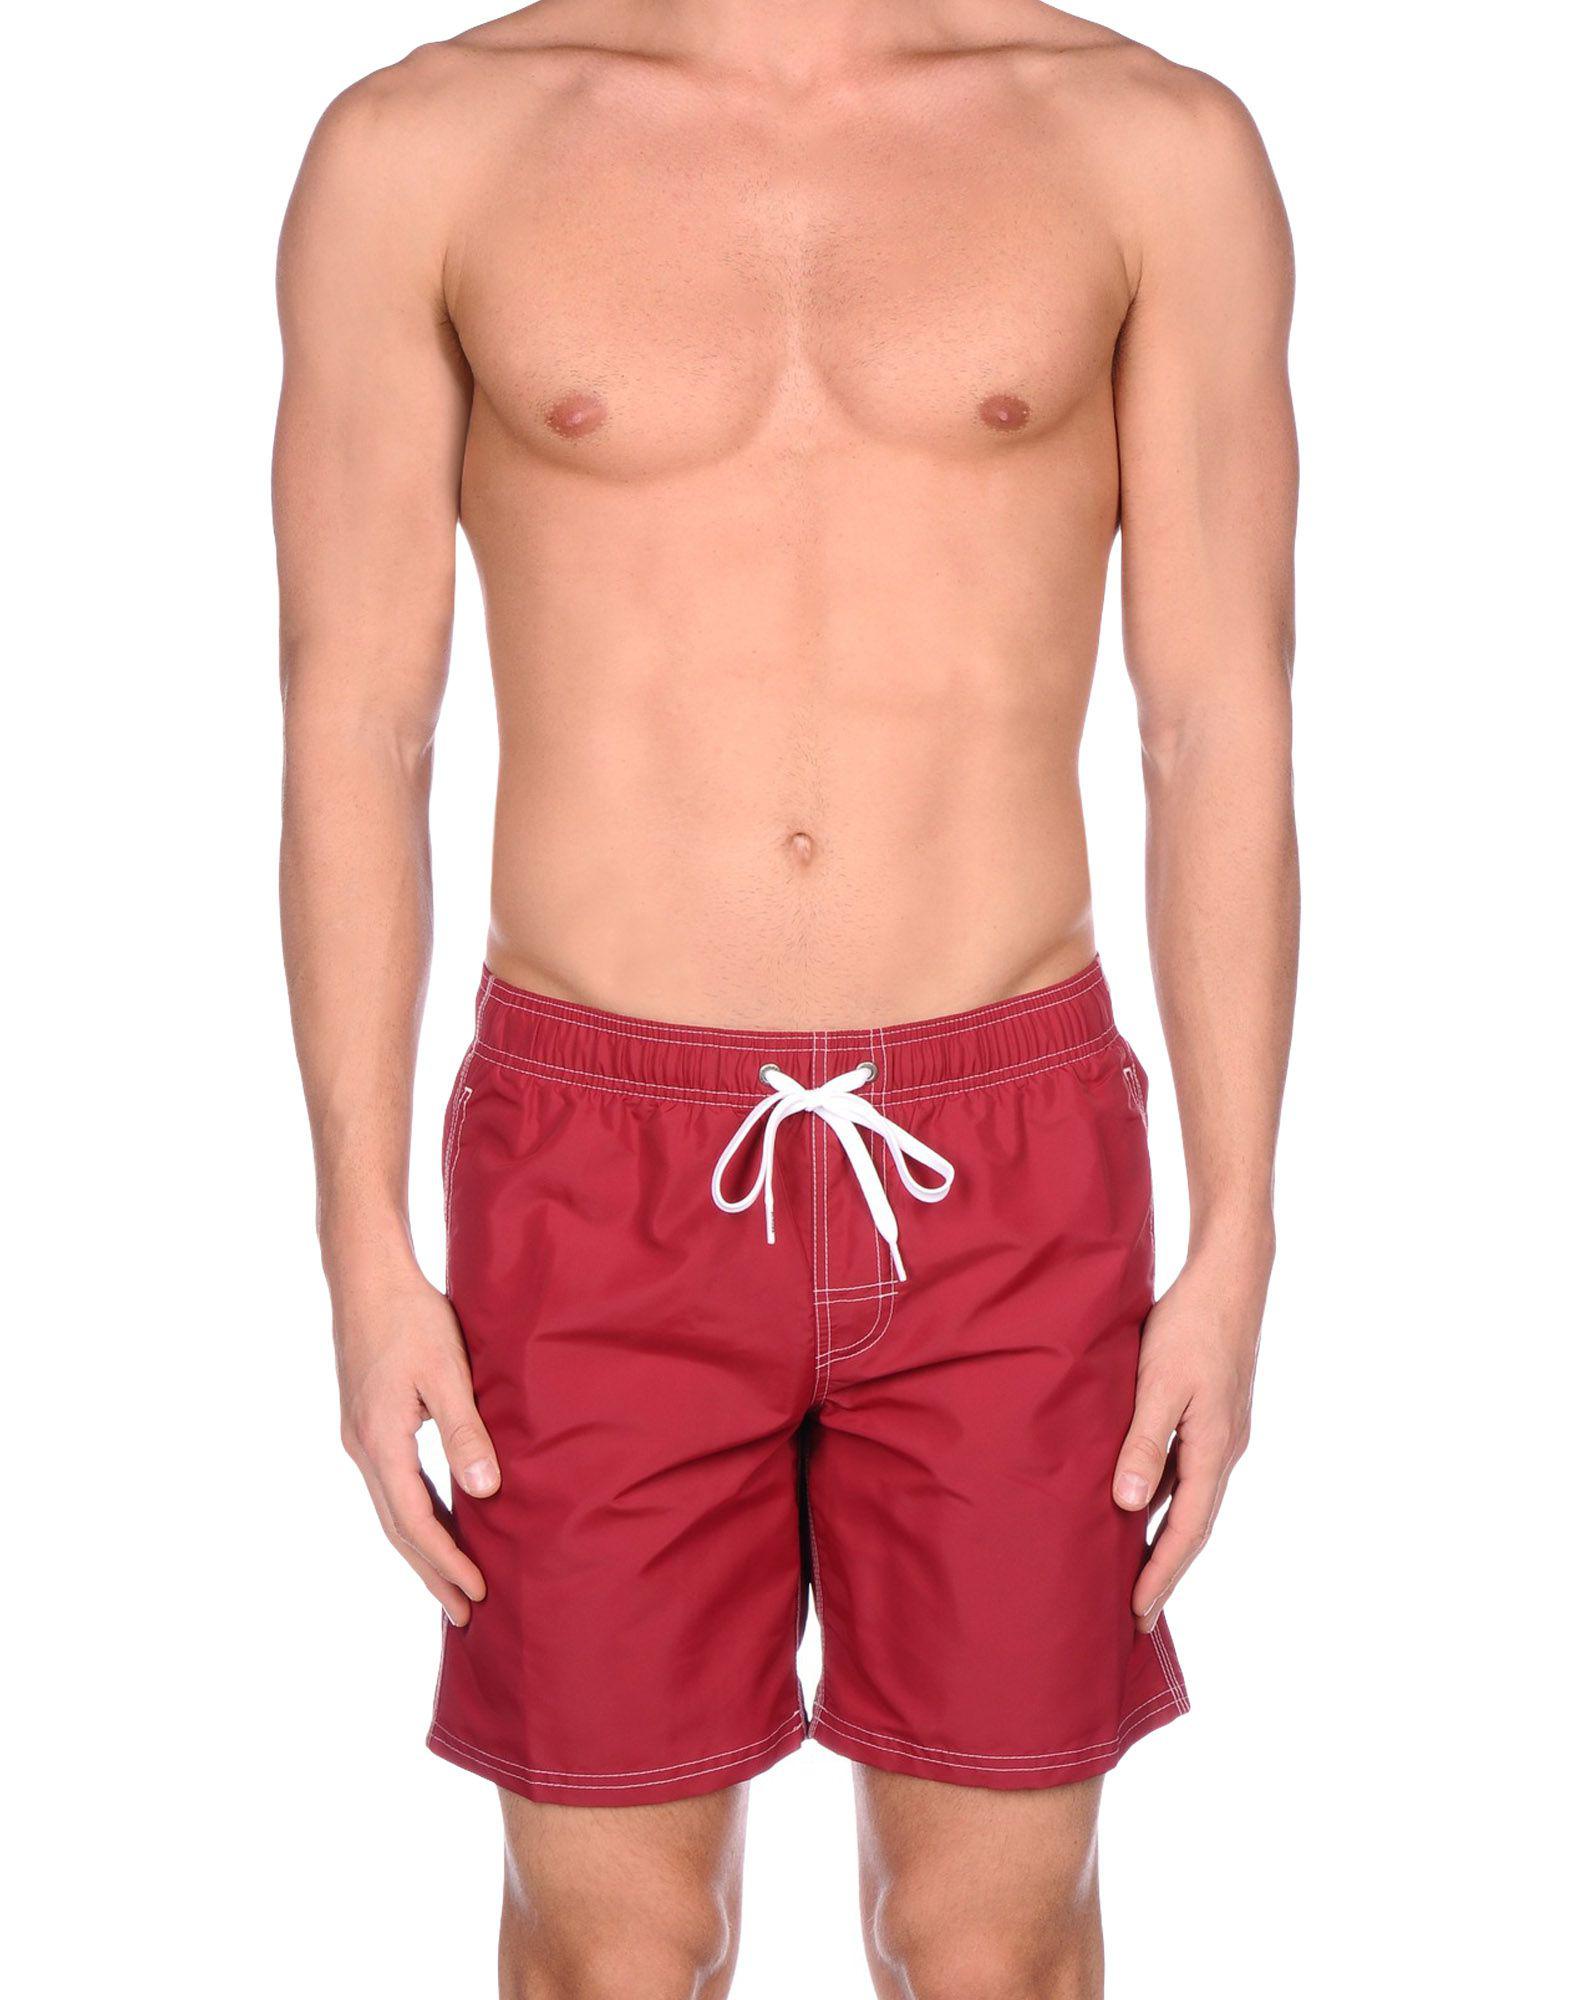 Sundek Synthetic Swim Trunks in Maroon (Red) for Men - Lyst